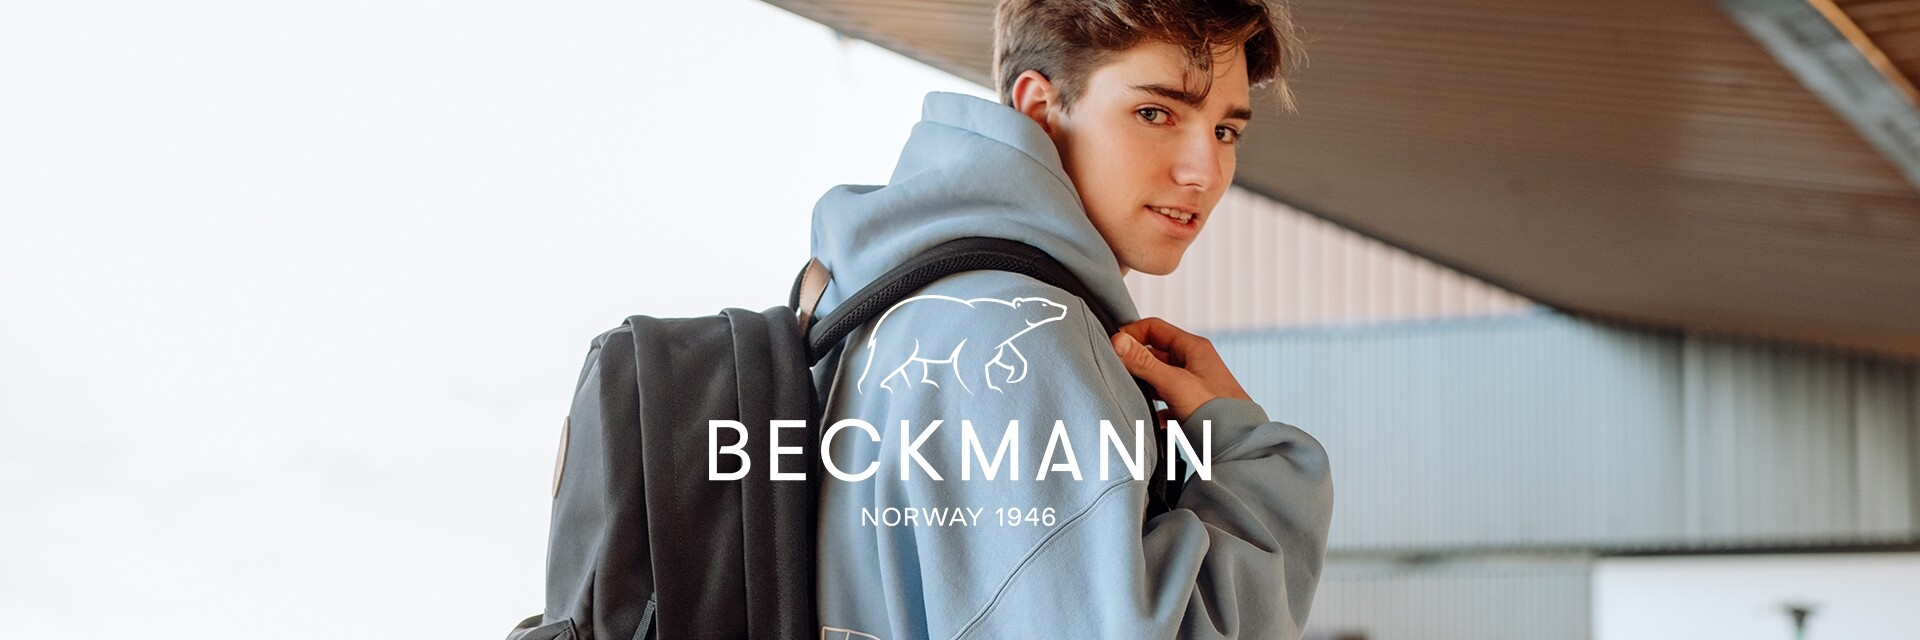 Beckmann Jugend, Studierende, Erwachsene Motiv 1